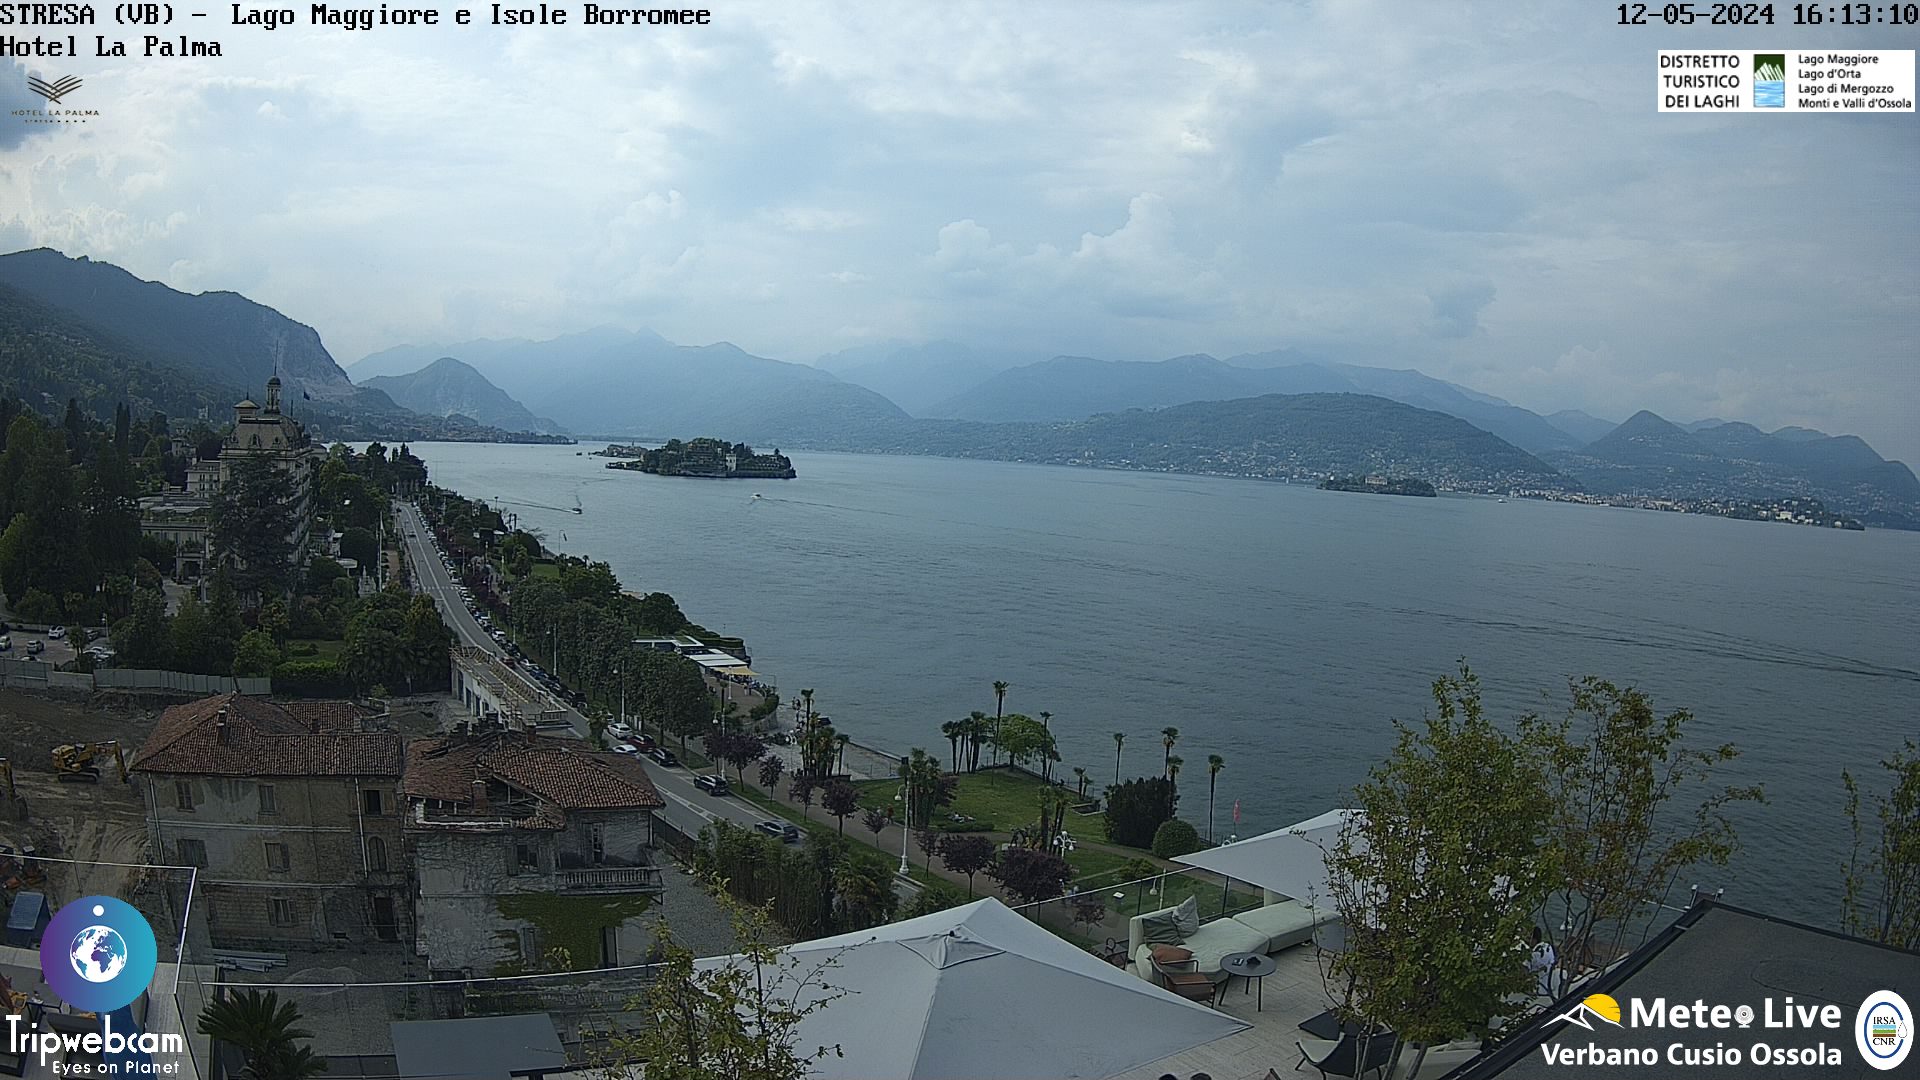 Stresa (Lago Maggiore) Mo. 17:18